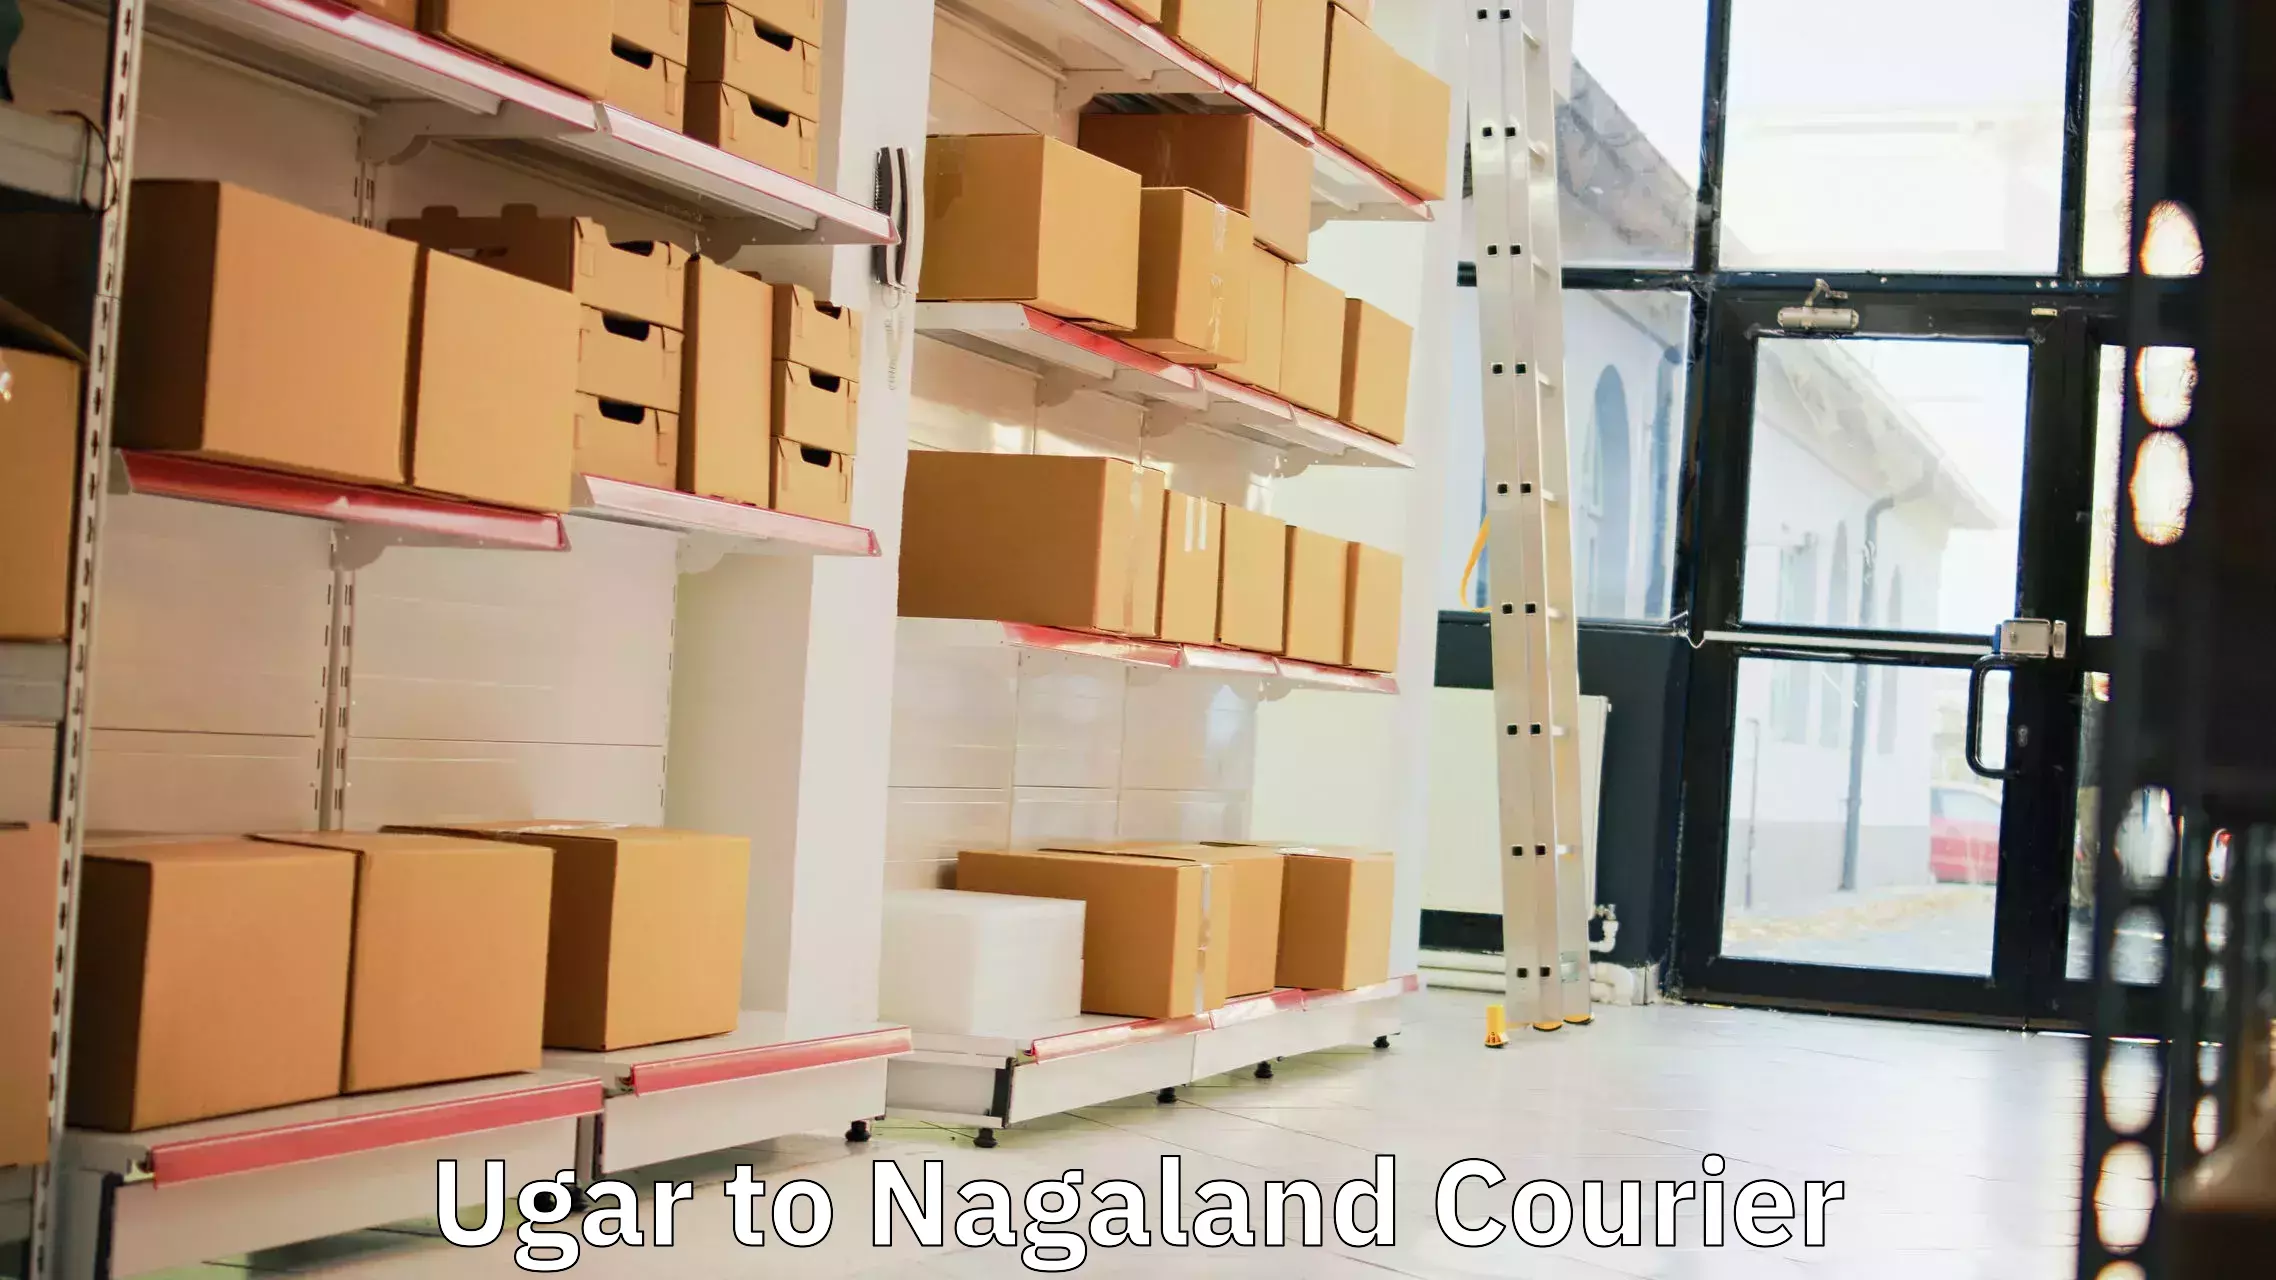 Shipping and handling Ugar to NIT Nagaland